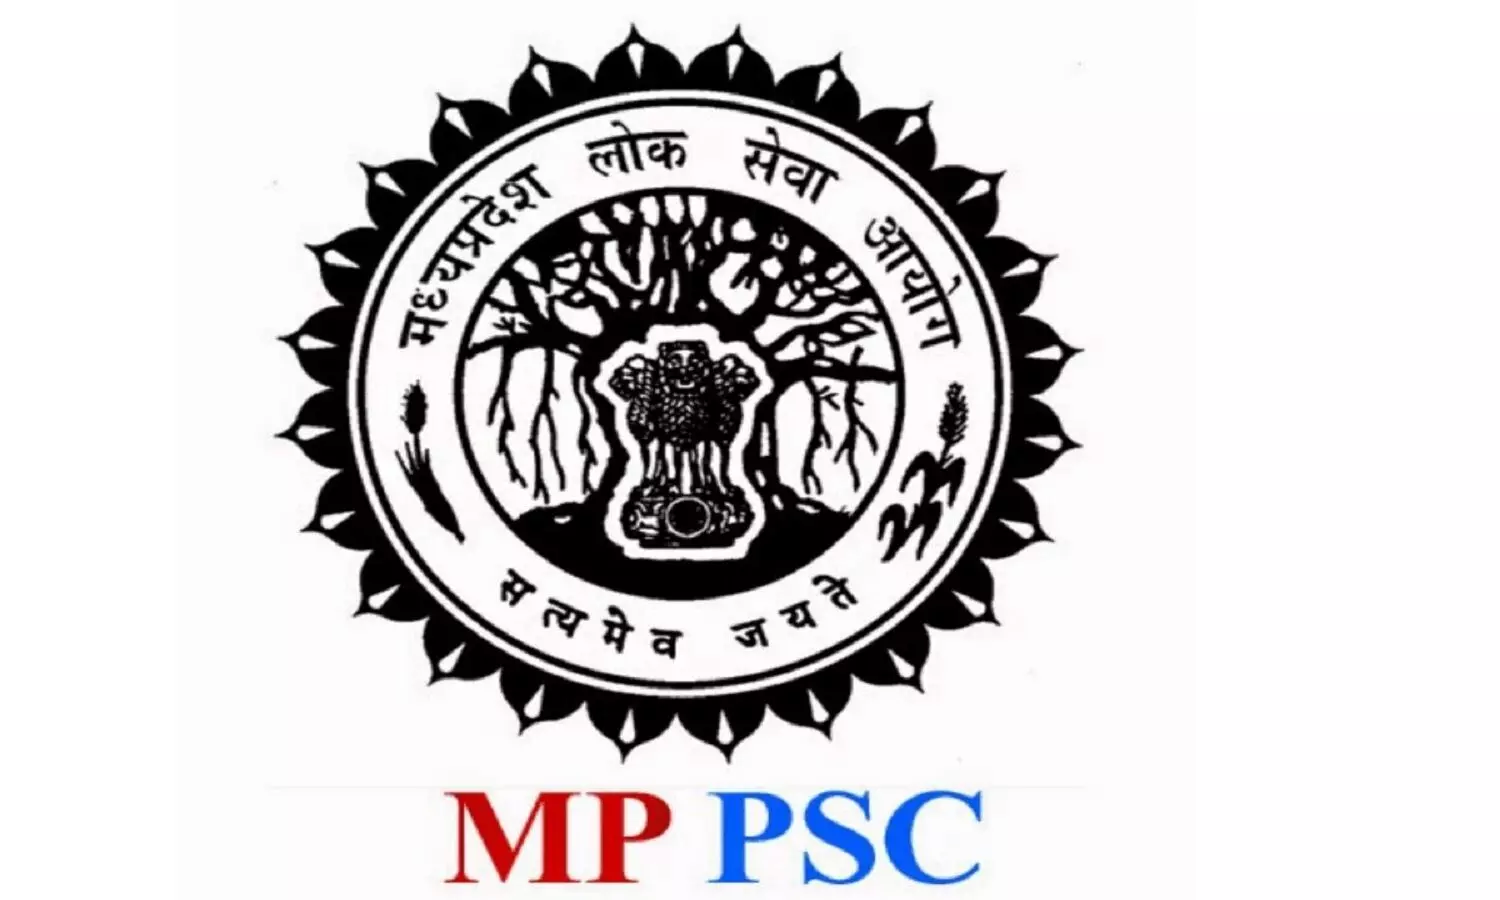 MPPSC Exam 2019